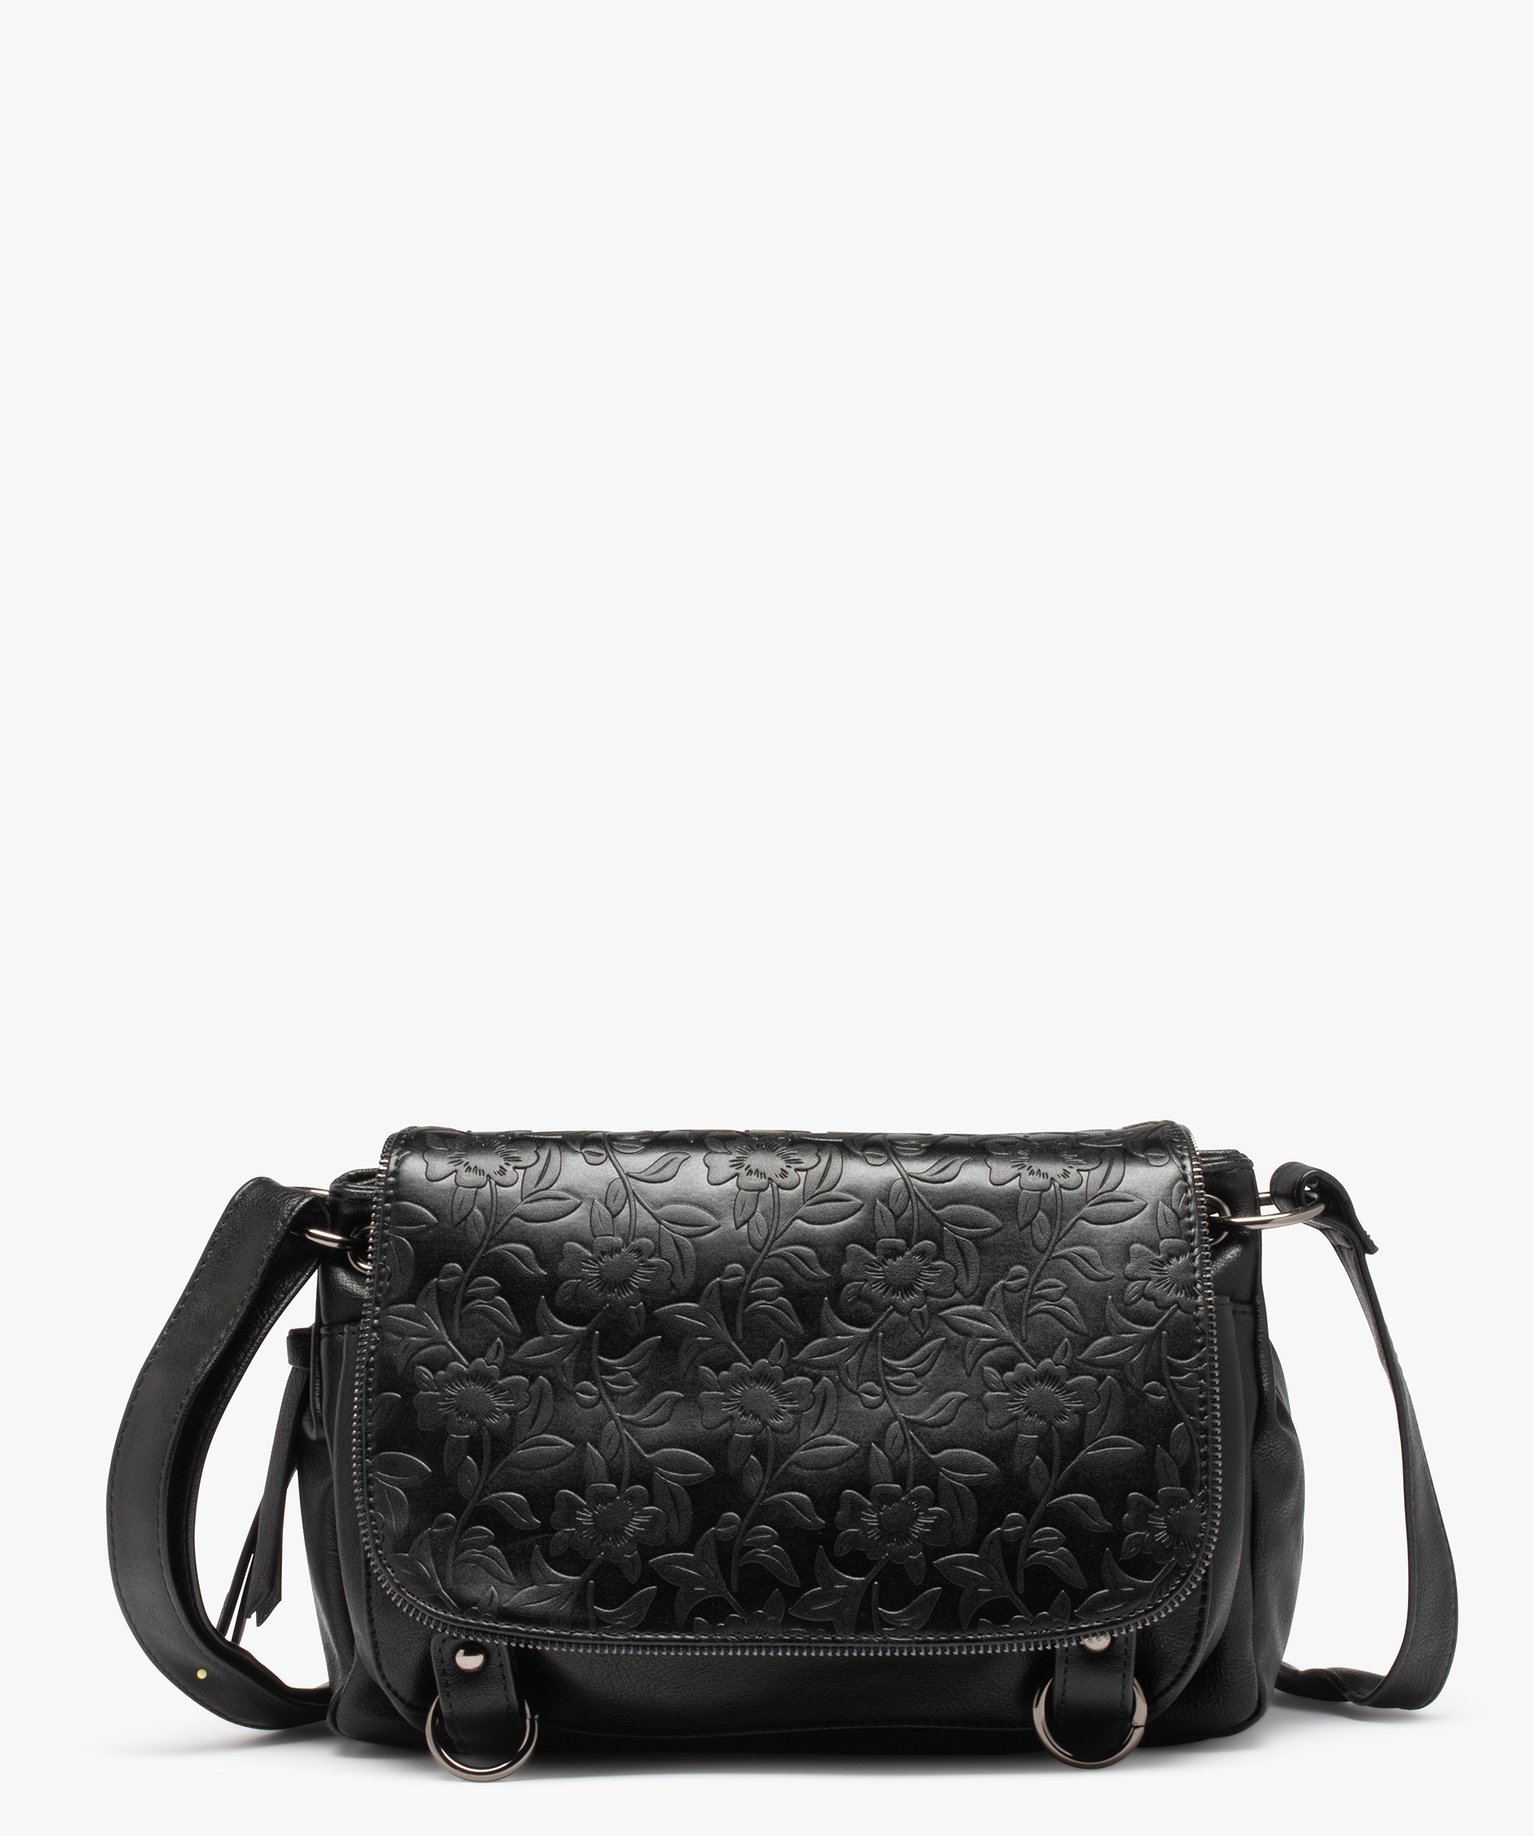 sac femme forme besace avec details zippes et fleurs en relief noir sacs bandouliere